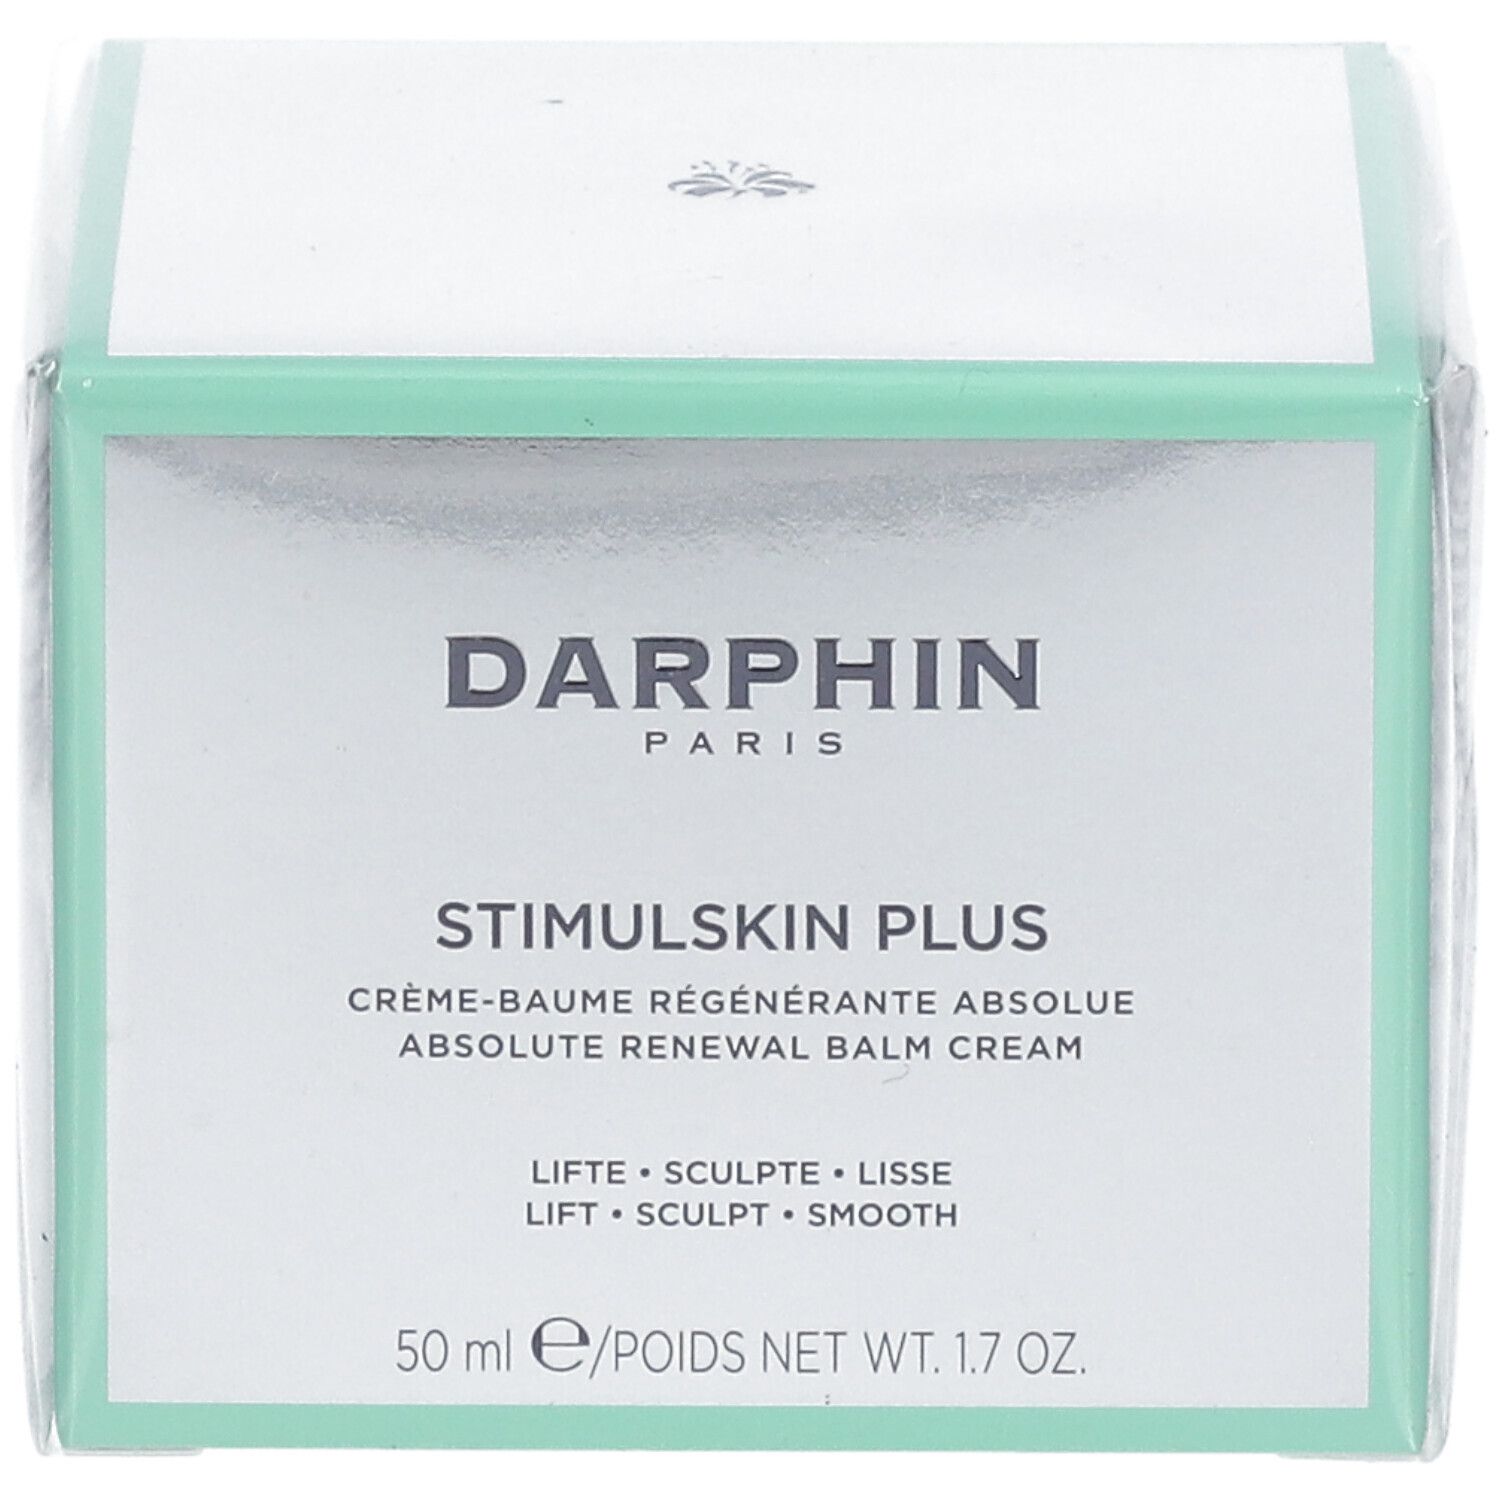 DARPHIN STIMULSKIN PLUS Absolut Renewal Balm Cream